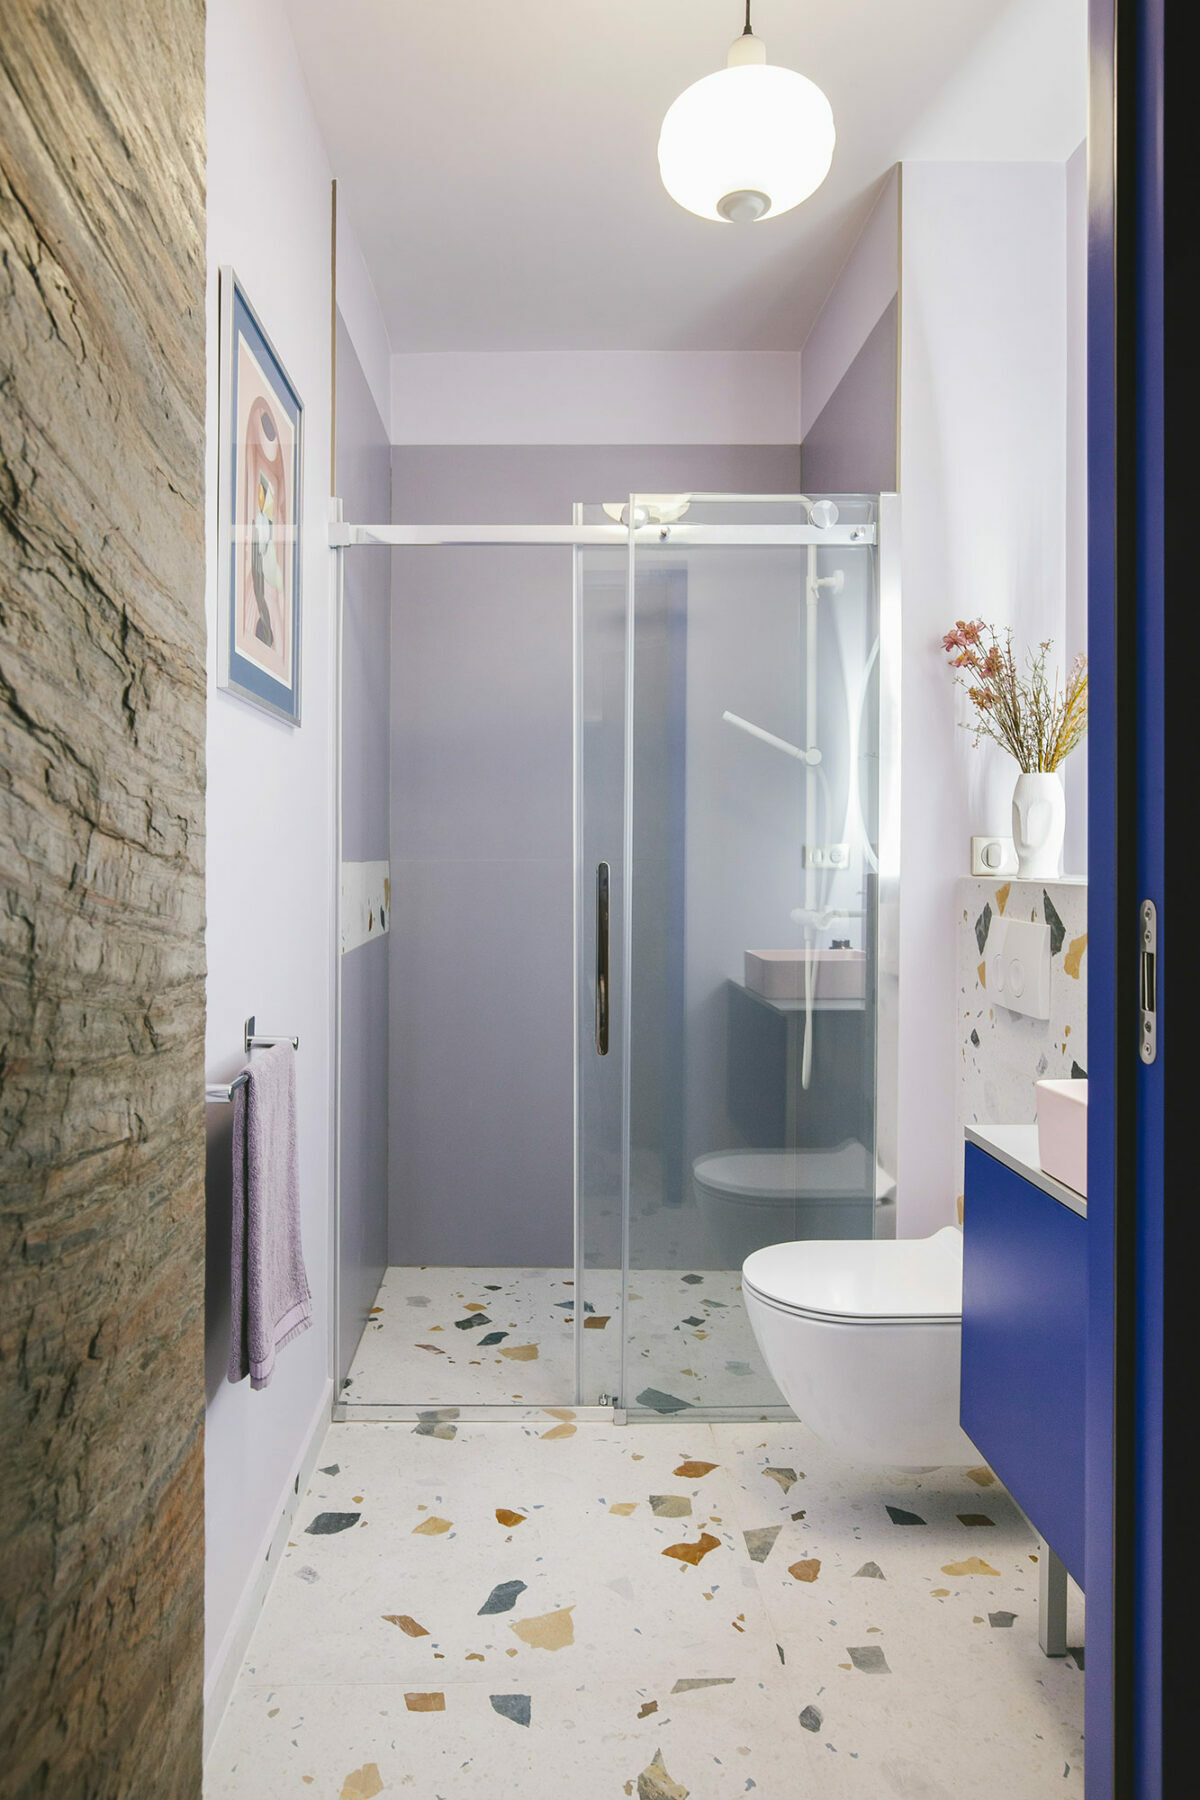 salle de douche italienne sol terrazzo grès cérame vase visage fleur séchée porte coulissante mur